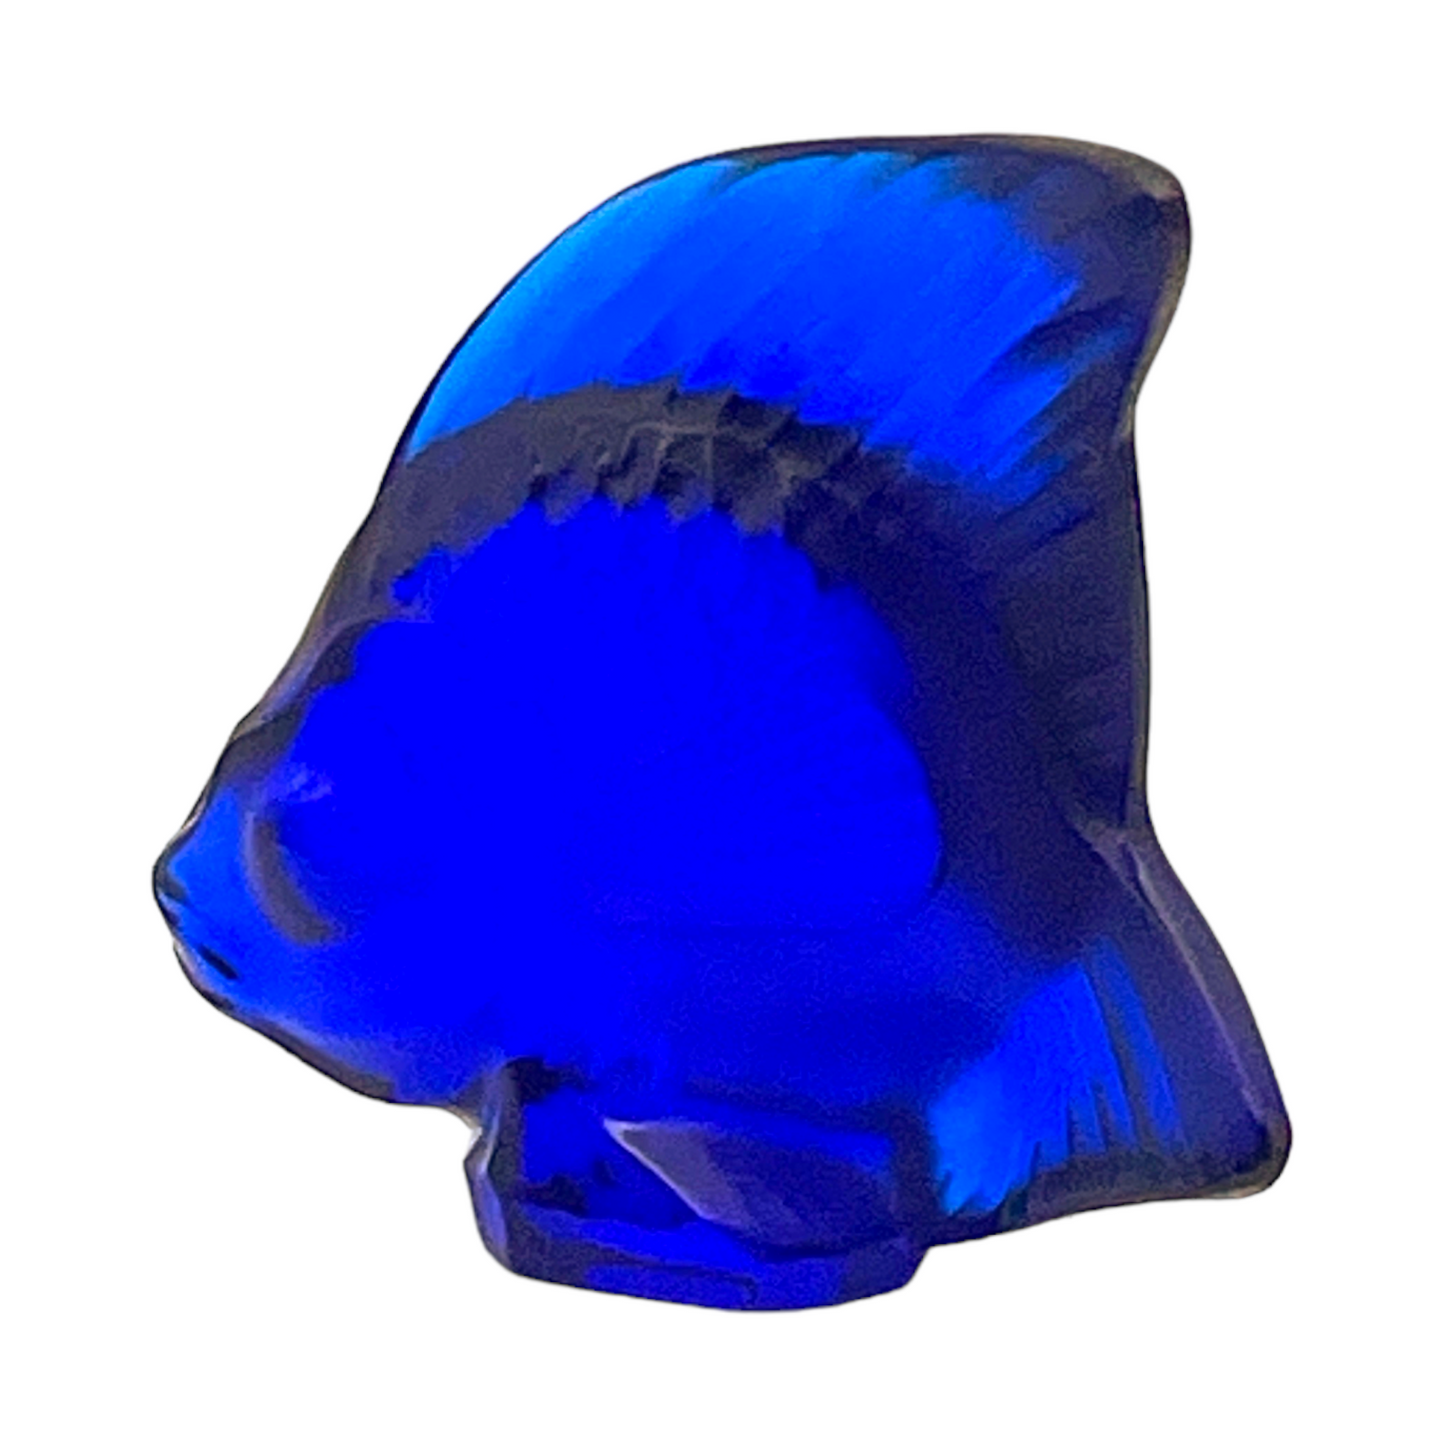 Lalique - Ferrat Blue Fish Sculpture - Signed - 2.25"